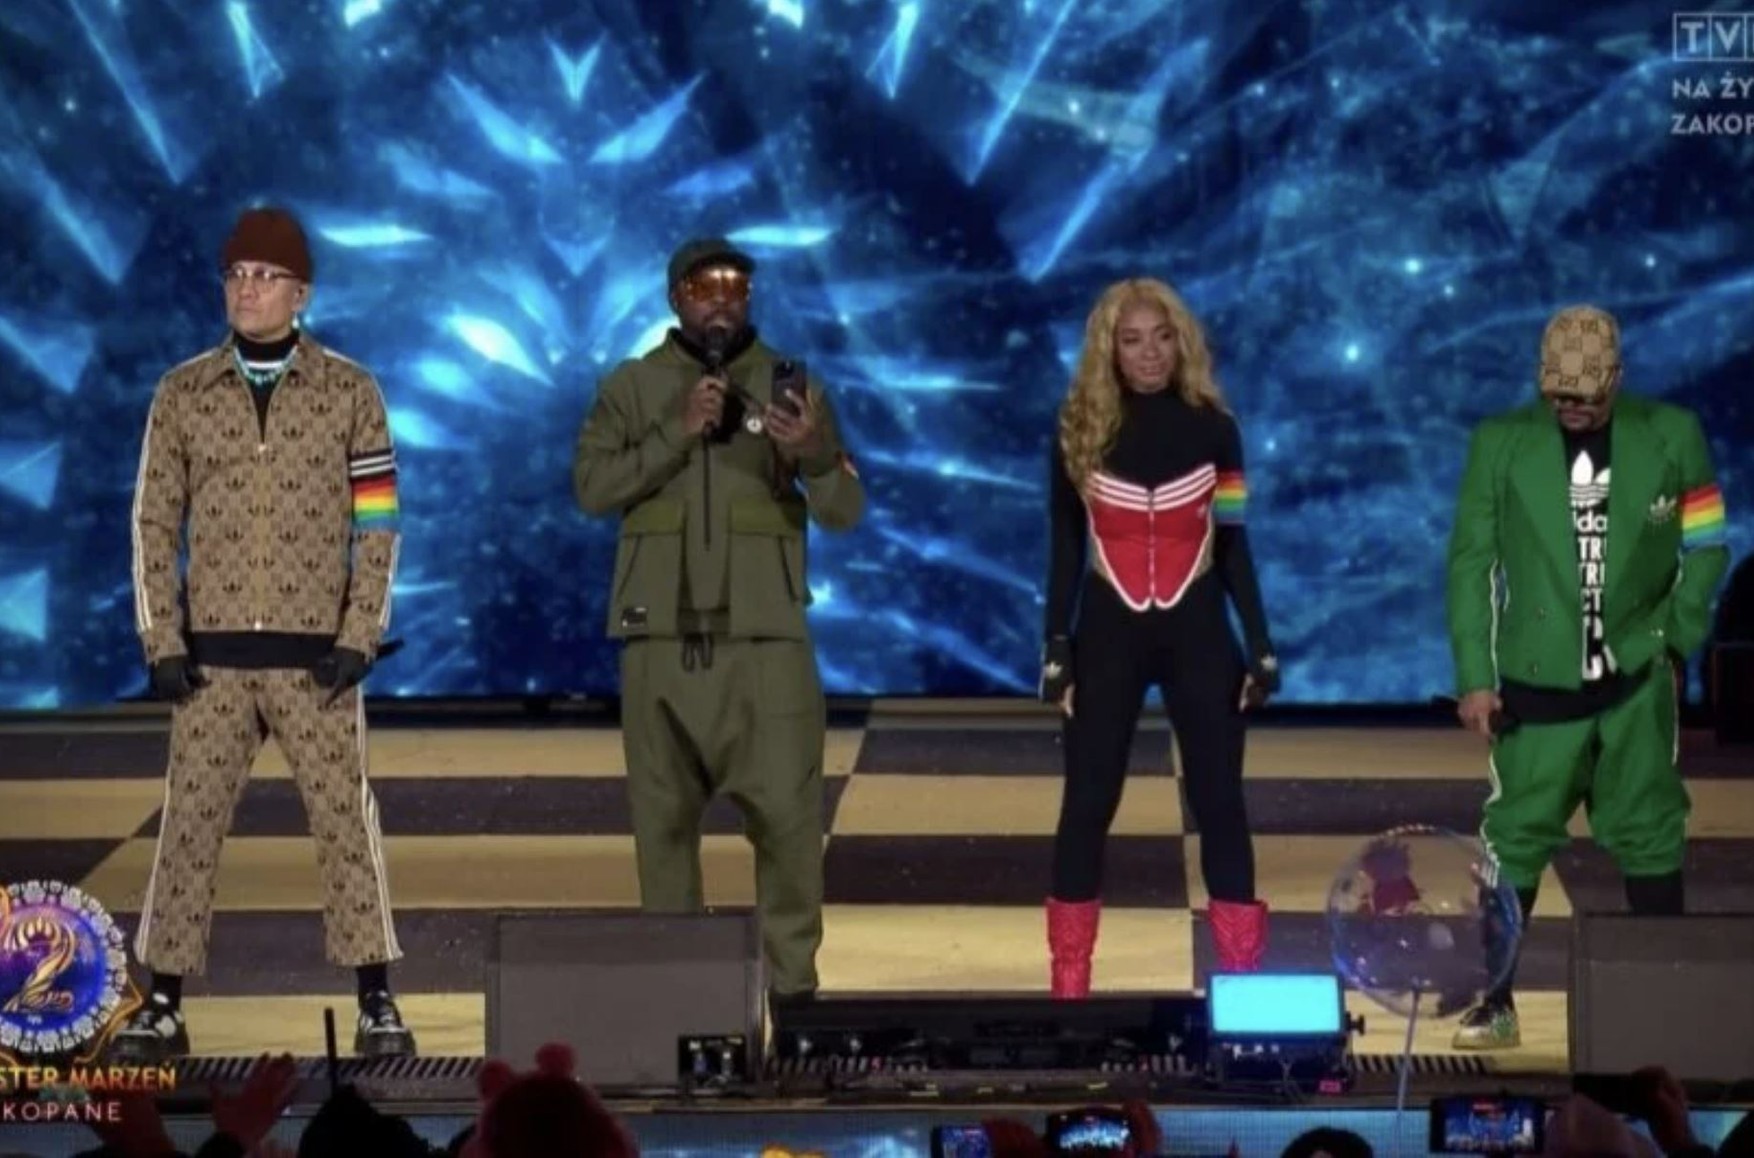  Black Eyed Peas пригласили выступить на гомофобном канале в Польше за $1 млн. Они вышли на сцену с ЛГБТ-повязками и вызвали скандал